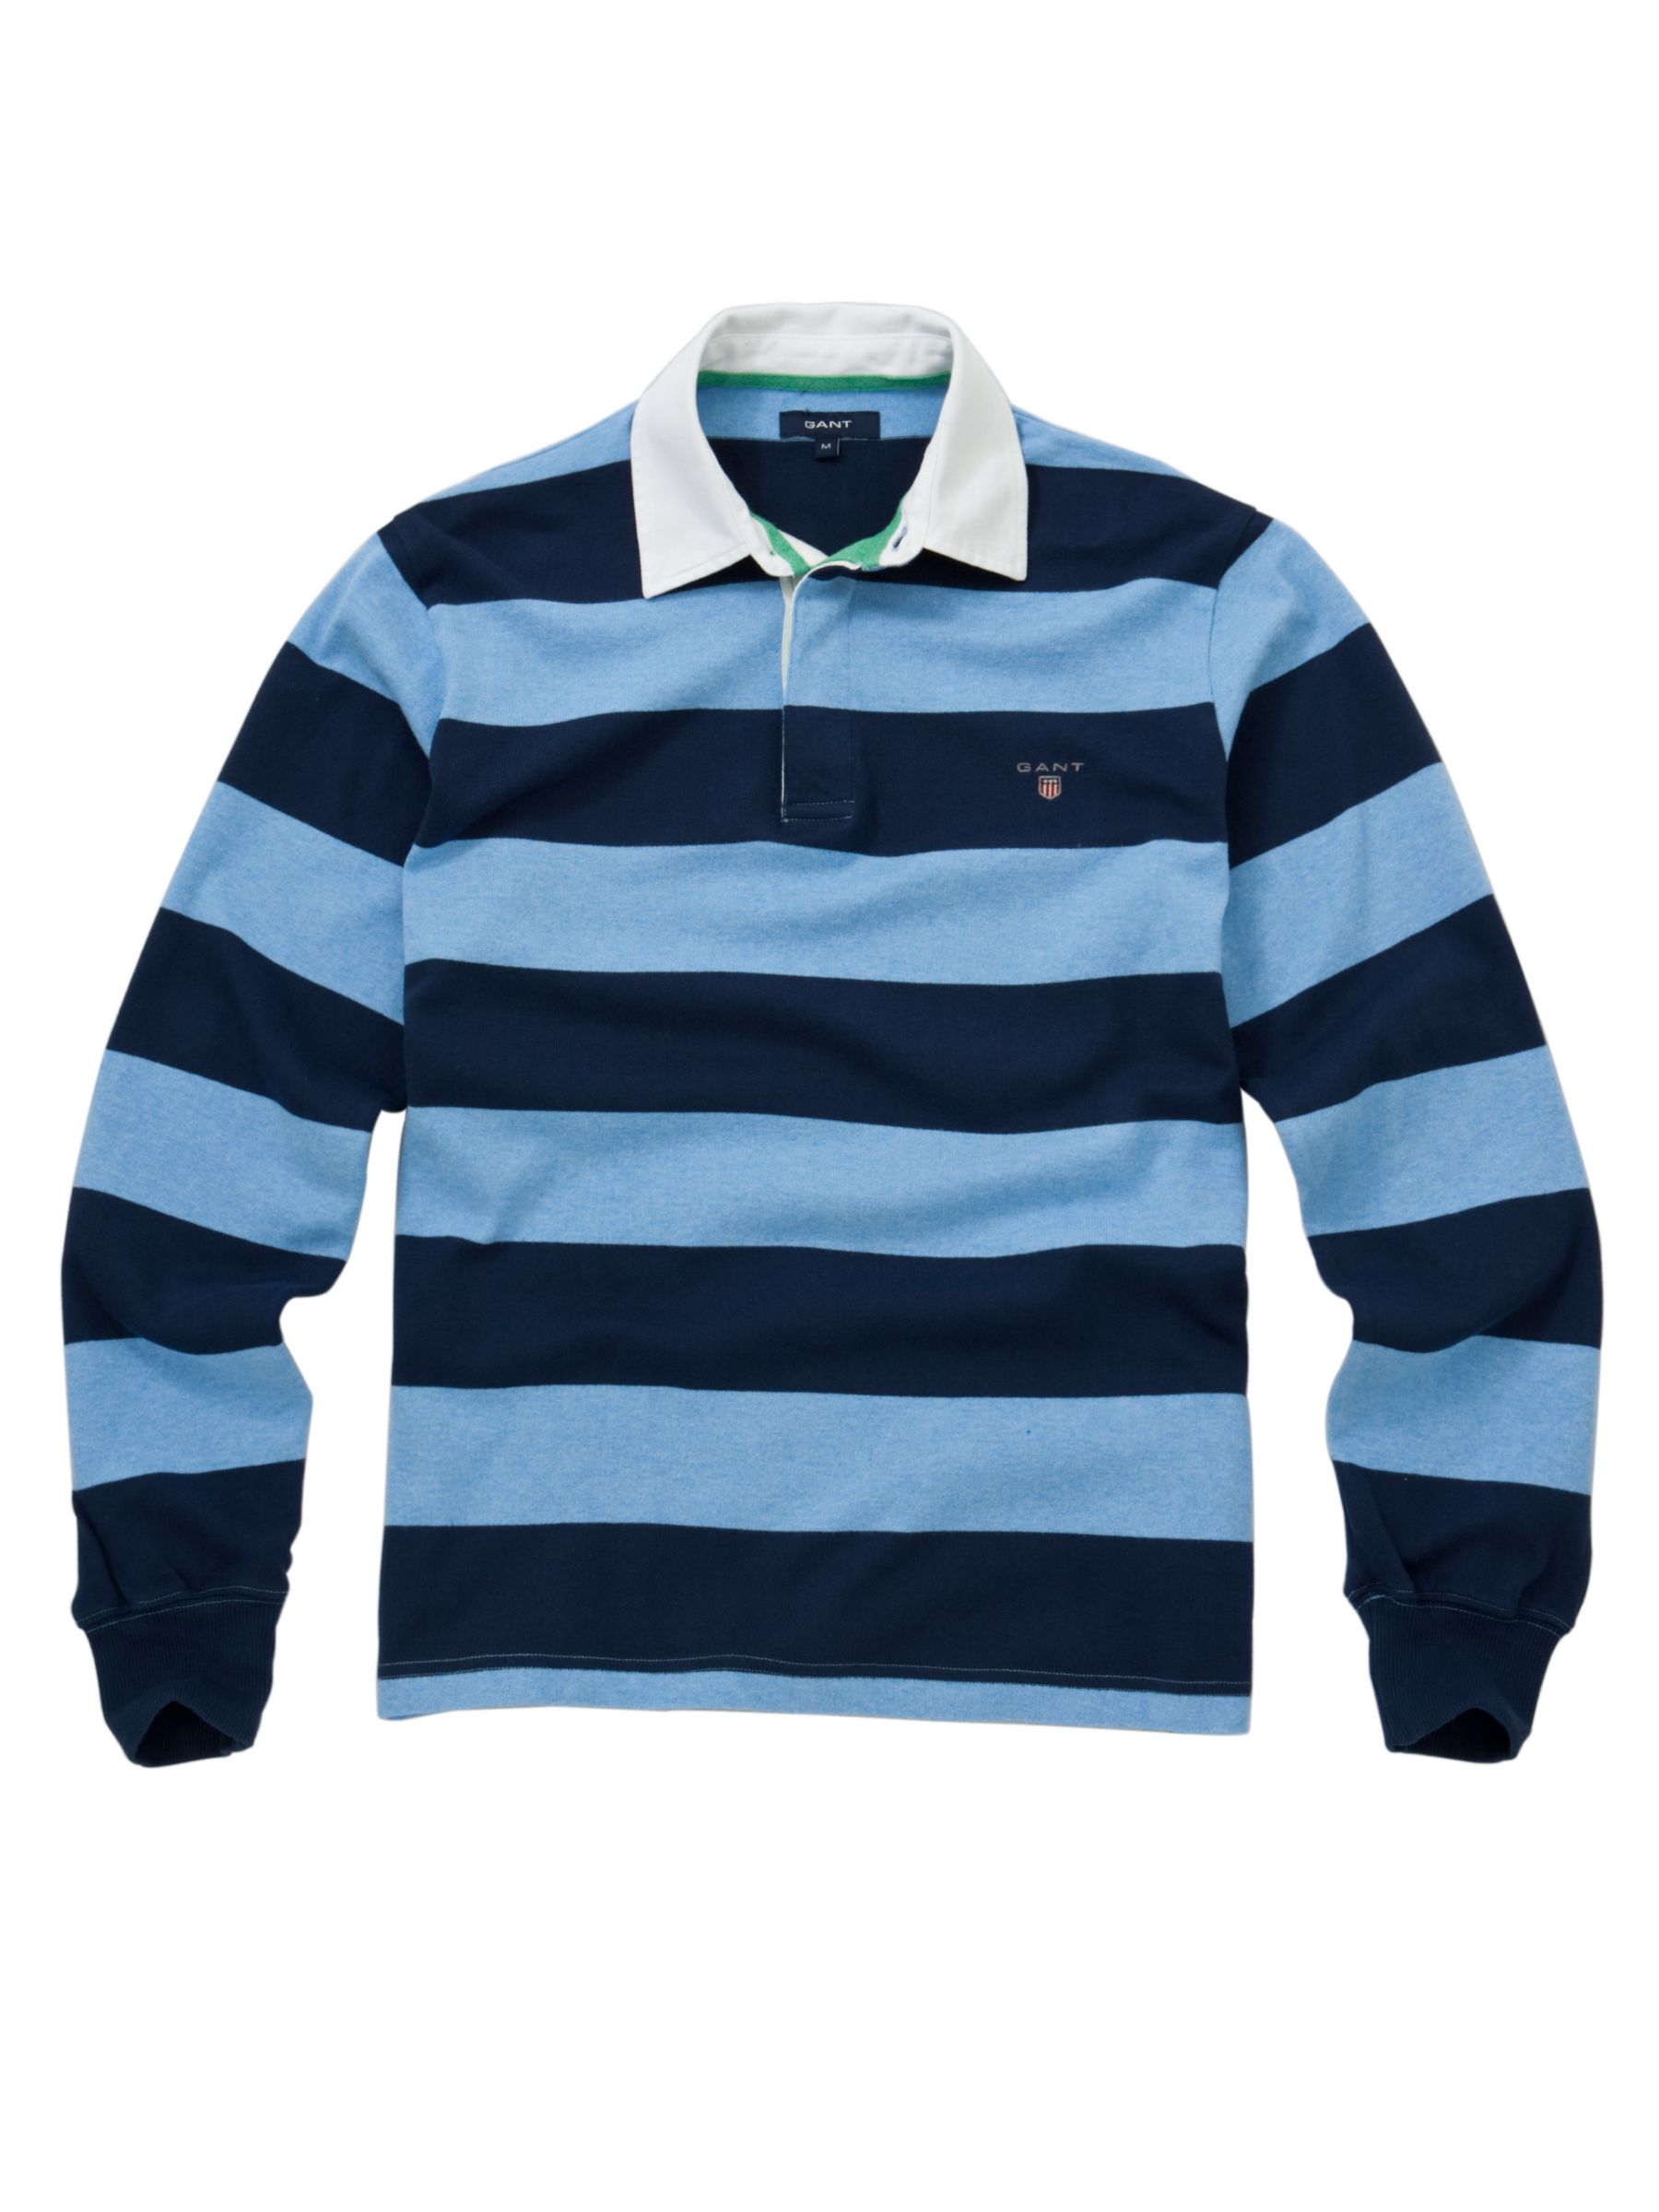 Gant Bar Stripe Heavy Rugby Shirt, Sky Blue